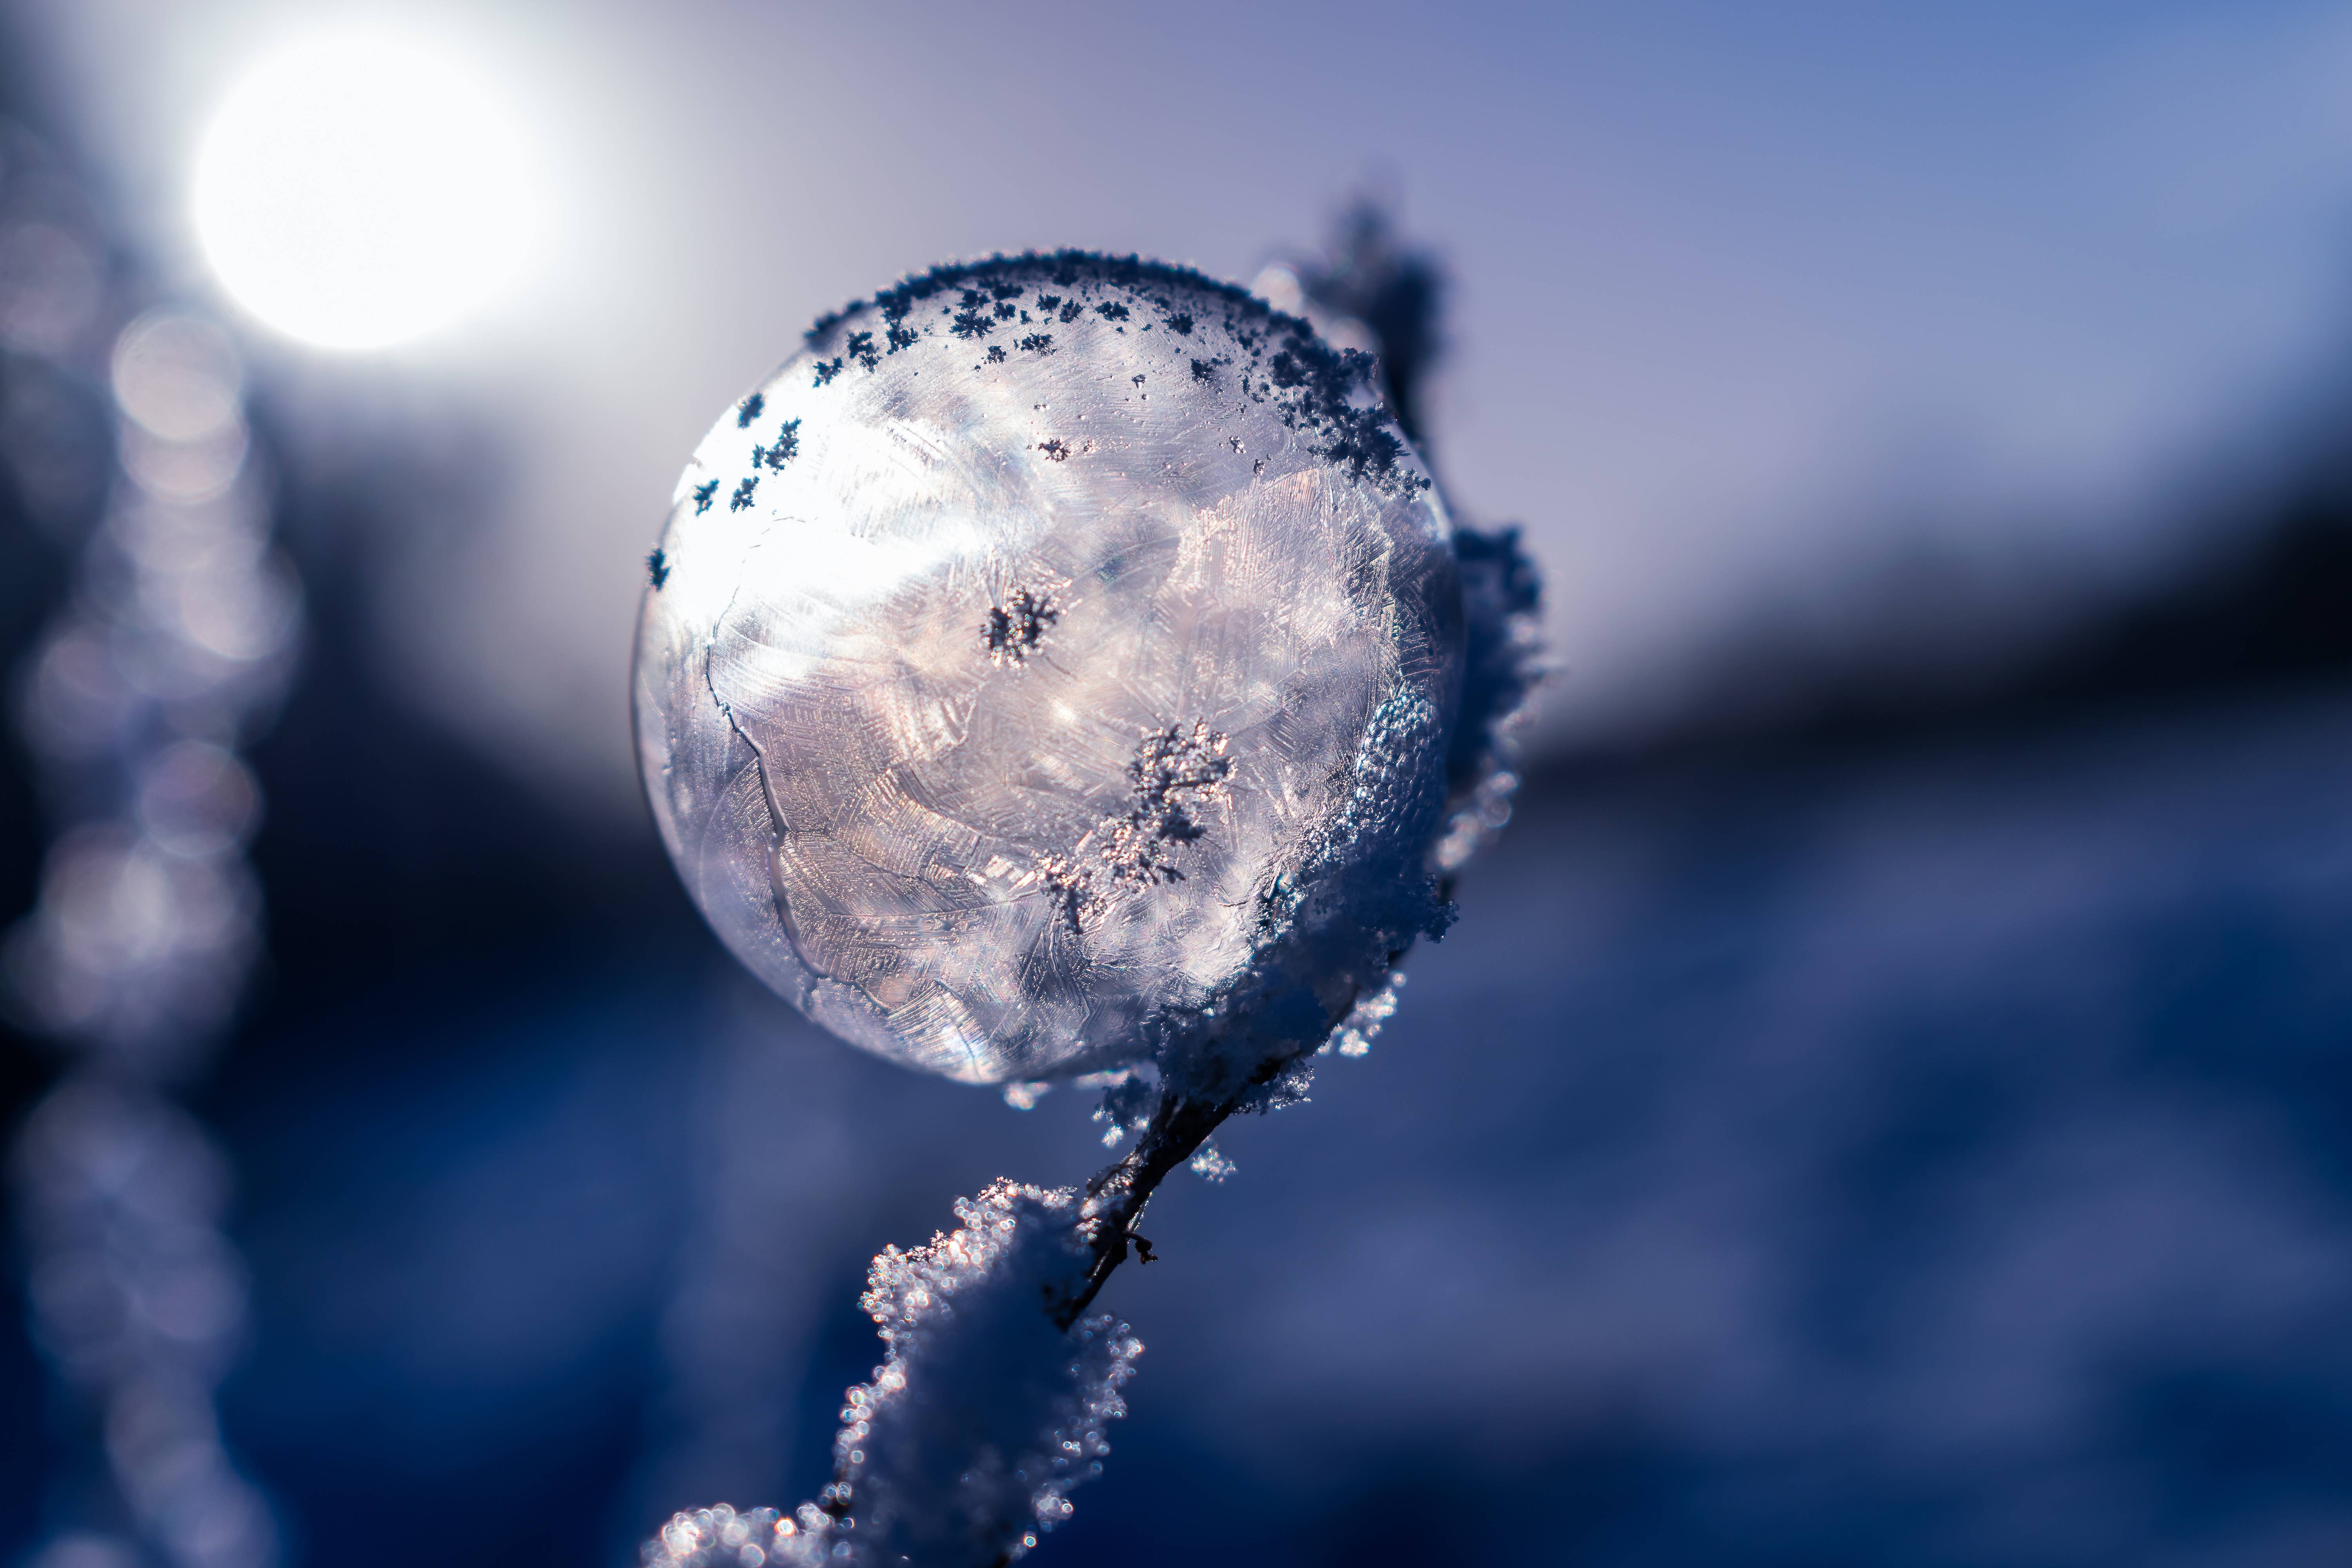 #bubble, #frozen, #soap, #winter, #frozen, #bubble